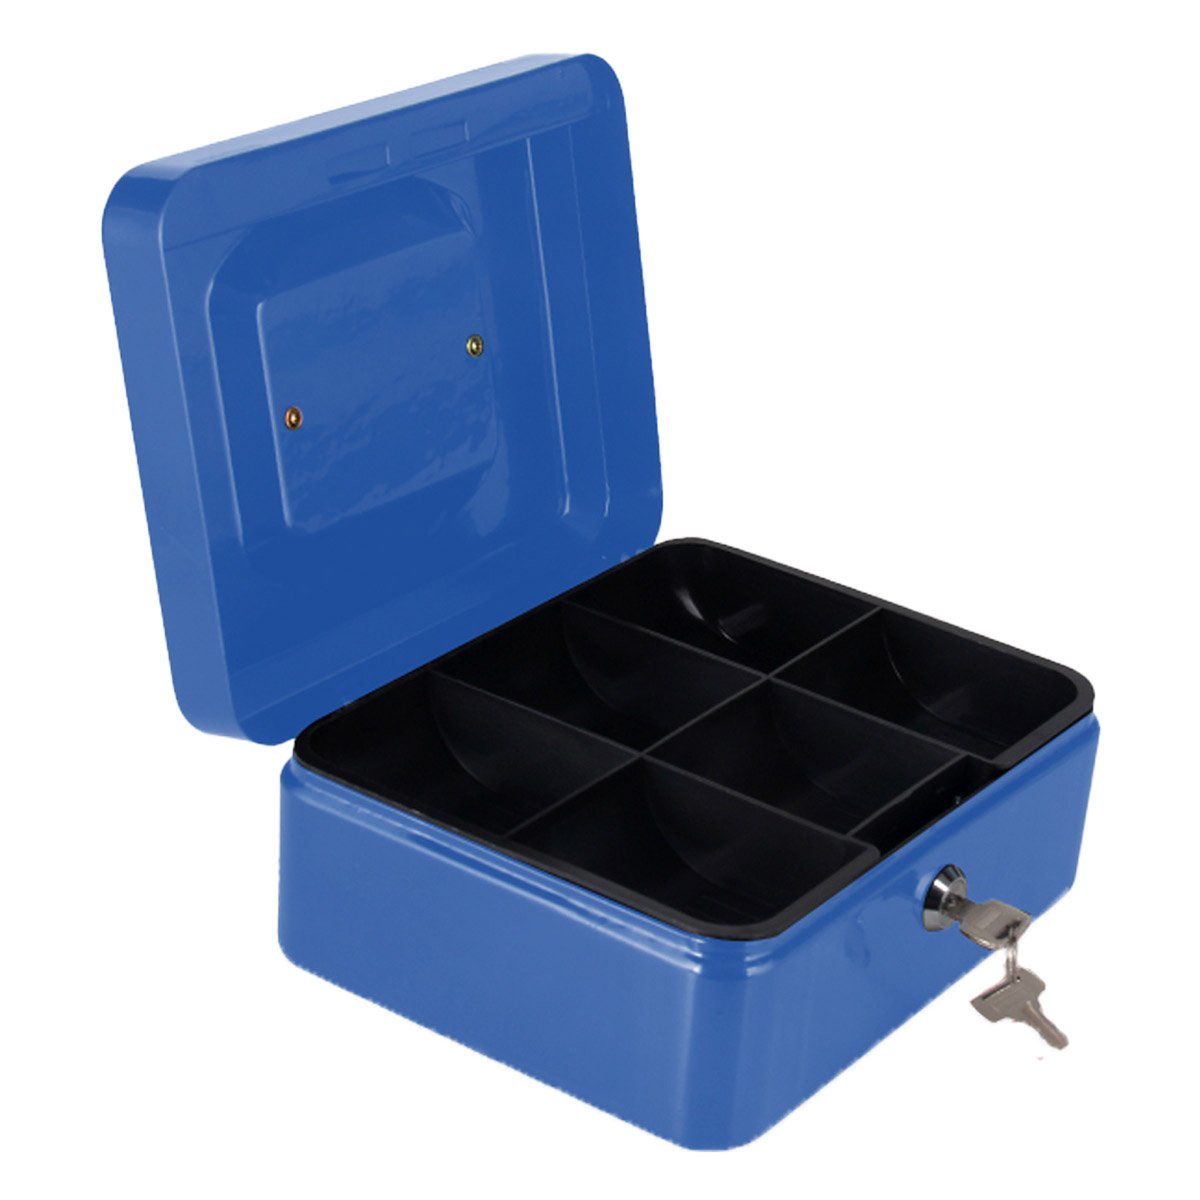 Cassetta Portavalori di Sicurezza in Acciaio con 2 Chiavi, Cassette dei contanti Vassoio Portamonete Integrato Dimensioni 20x16x9 cm, Colore Blu